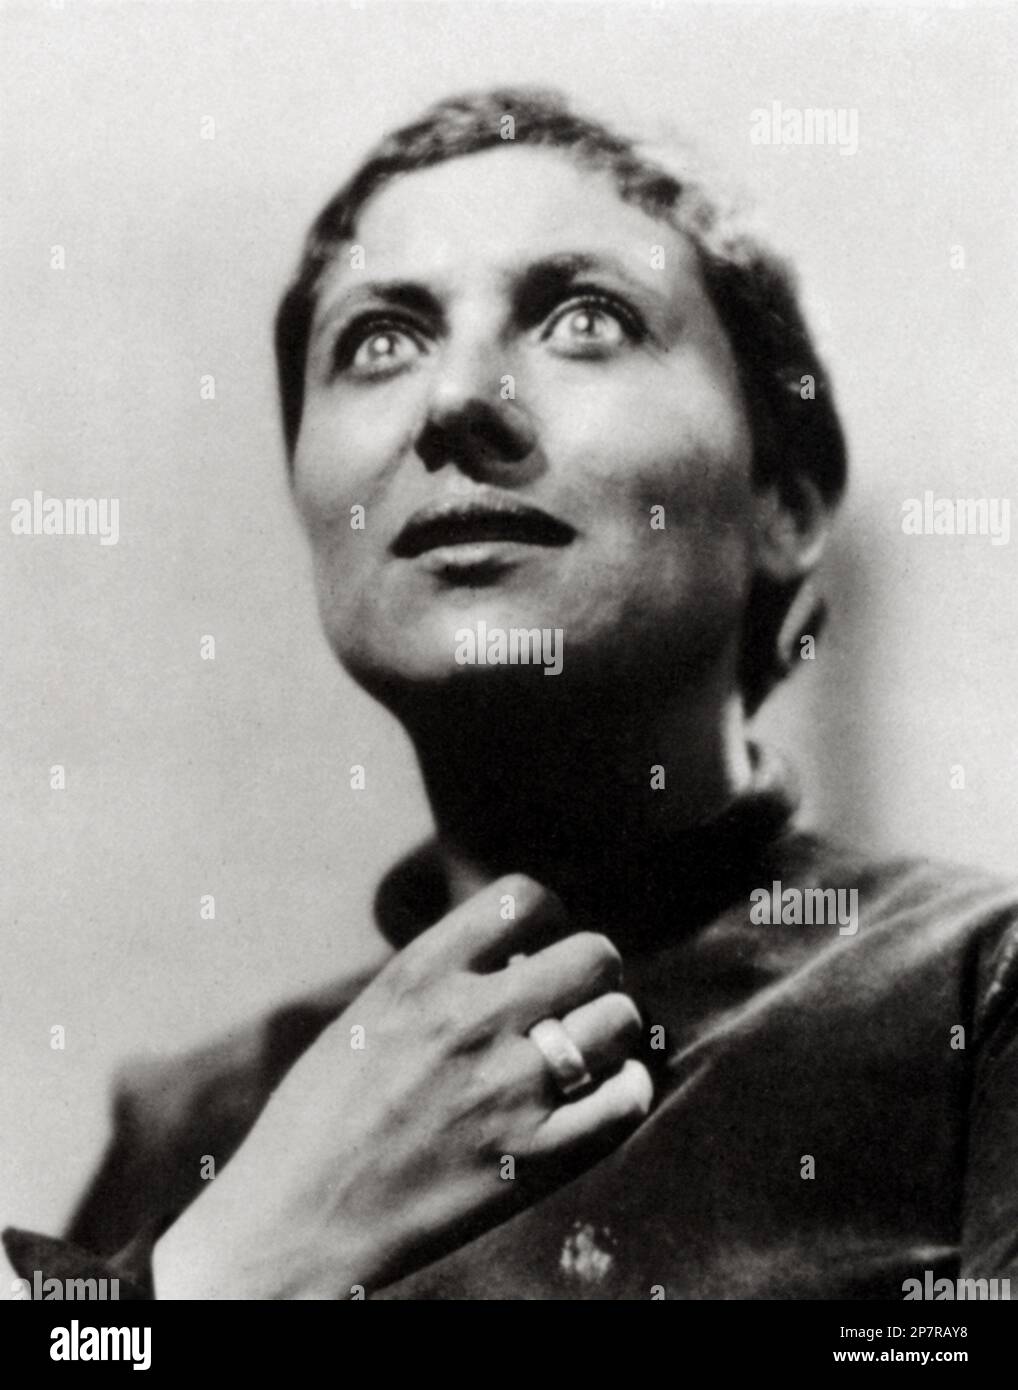 1928 : The silent movie actress  MARIA ( Marie ) FALCONETTI ( Renee Falconetti  , 1892 - 1946 )  in THE PASSION OF JOAN OF ARC ( La Passion de Jeanne d'Arc - La Passione di Giovanna d' Arco ) by Carl Theodor Dreyer - FILM - CINEMA MUTO - SILENT MOVIE - film storico - ring - anello - DANIMARCA - DENMARK  - extasy - estasi  - Giovanna D'Arco ----  Archivio GBB Stock Photo